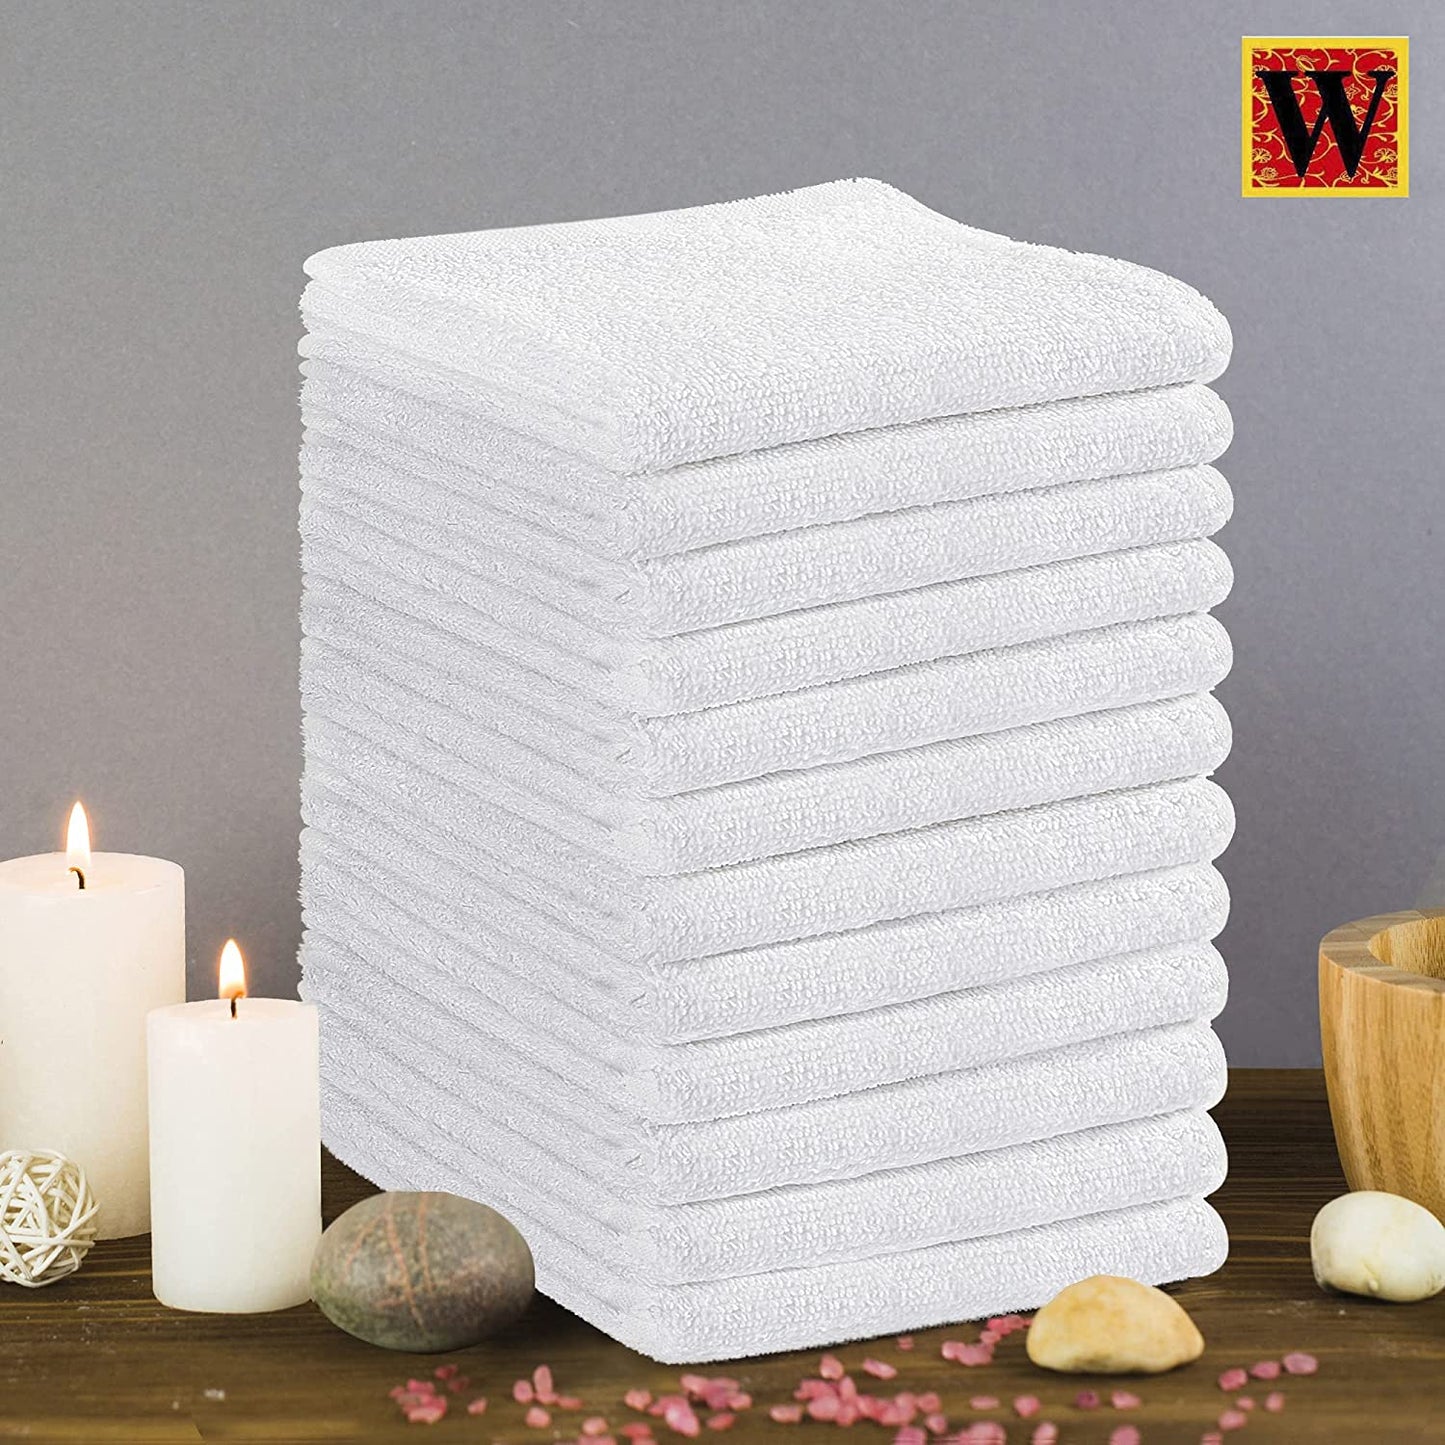 100% Cotton 12pc Premium Face Towels Set, 30x30cm - WESTLANE LINENS